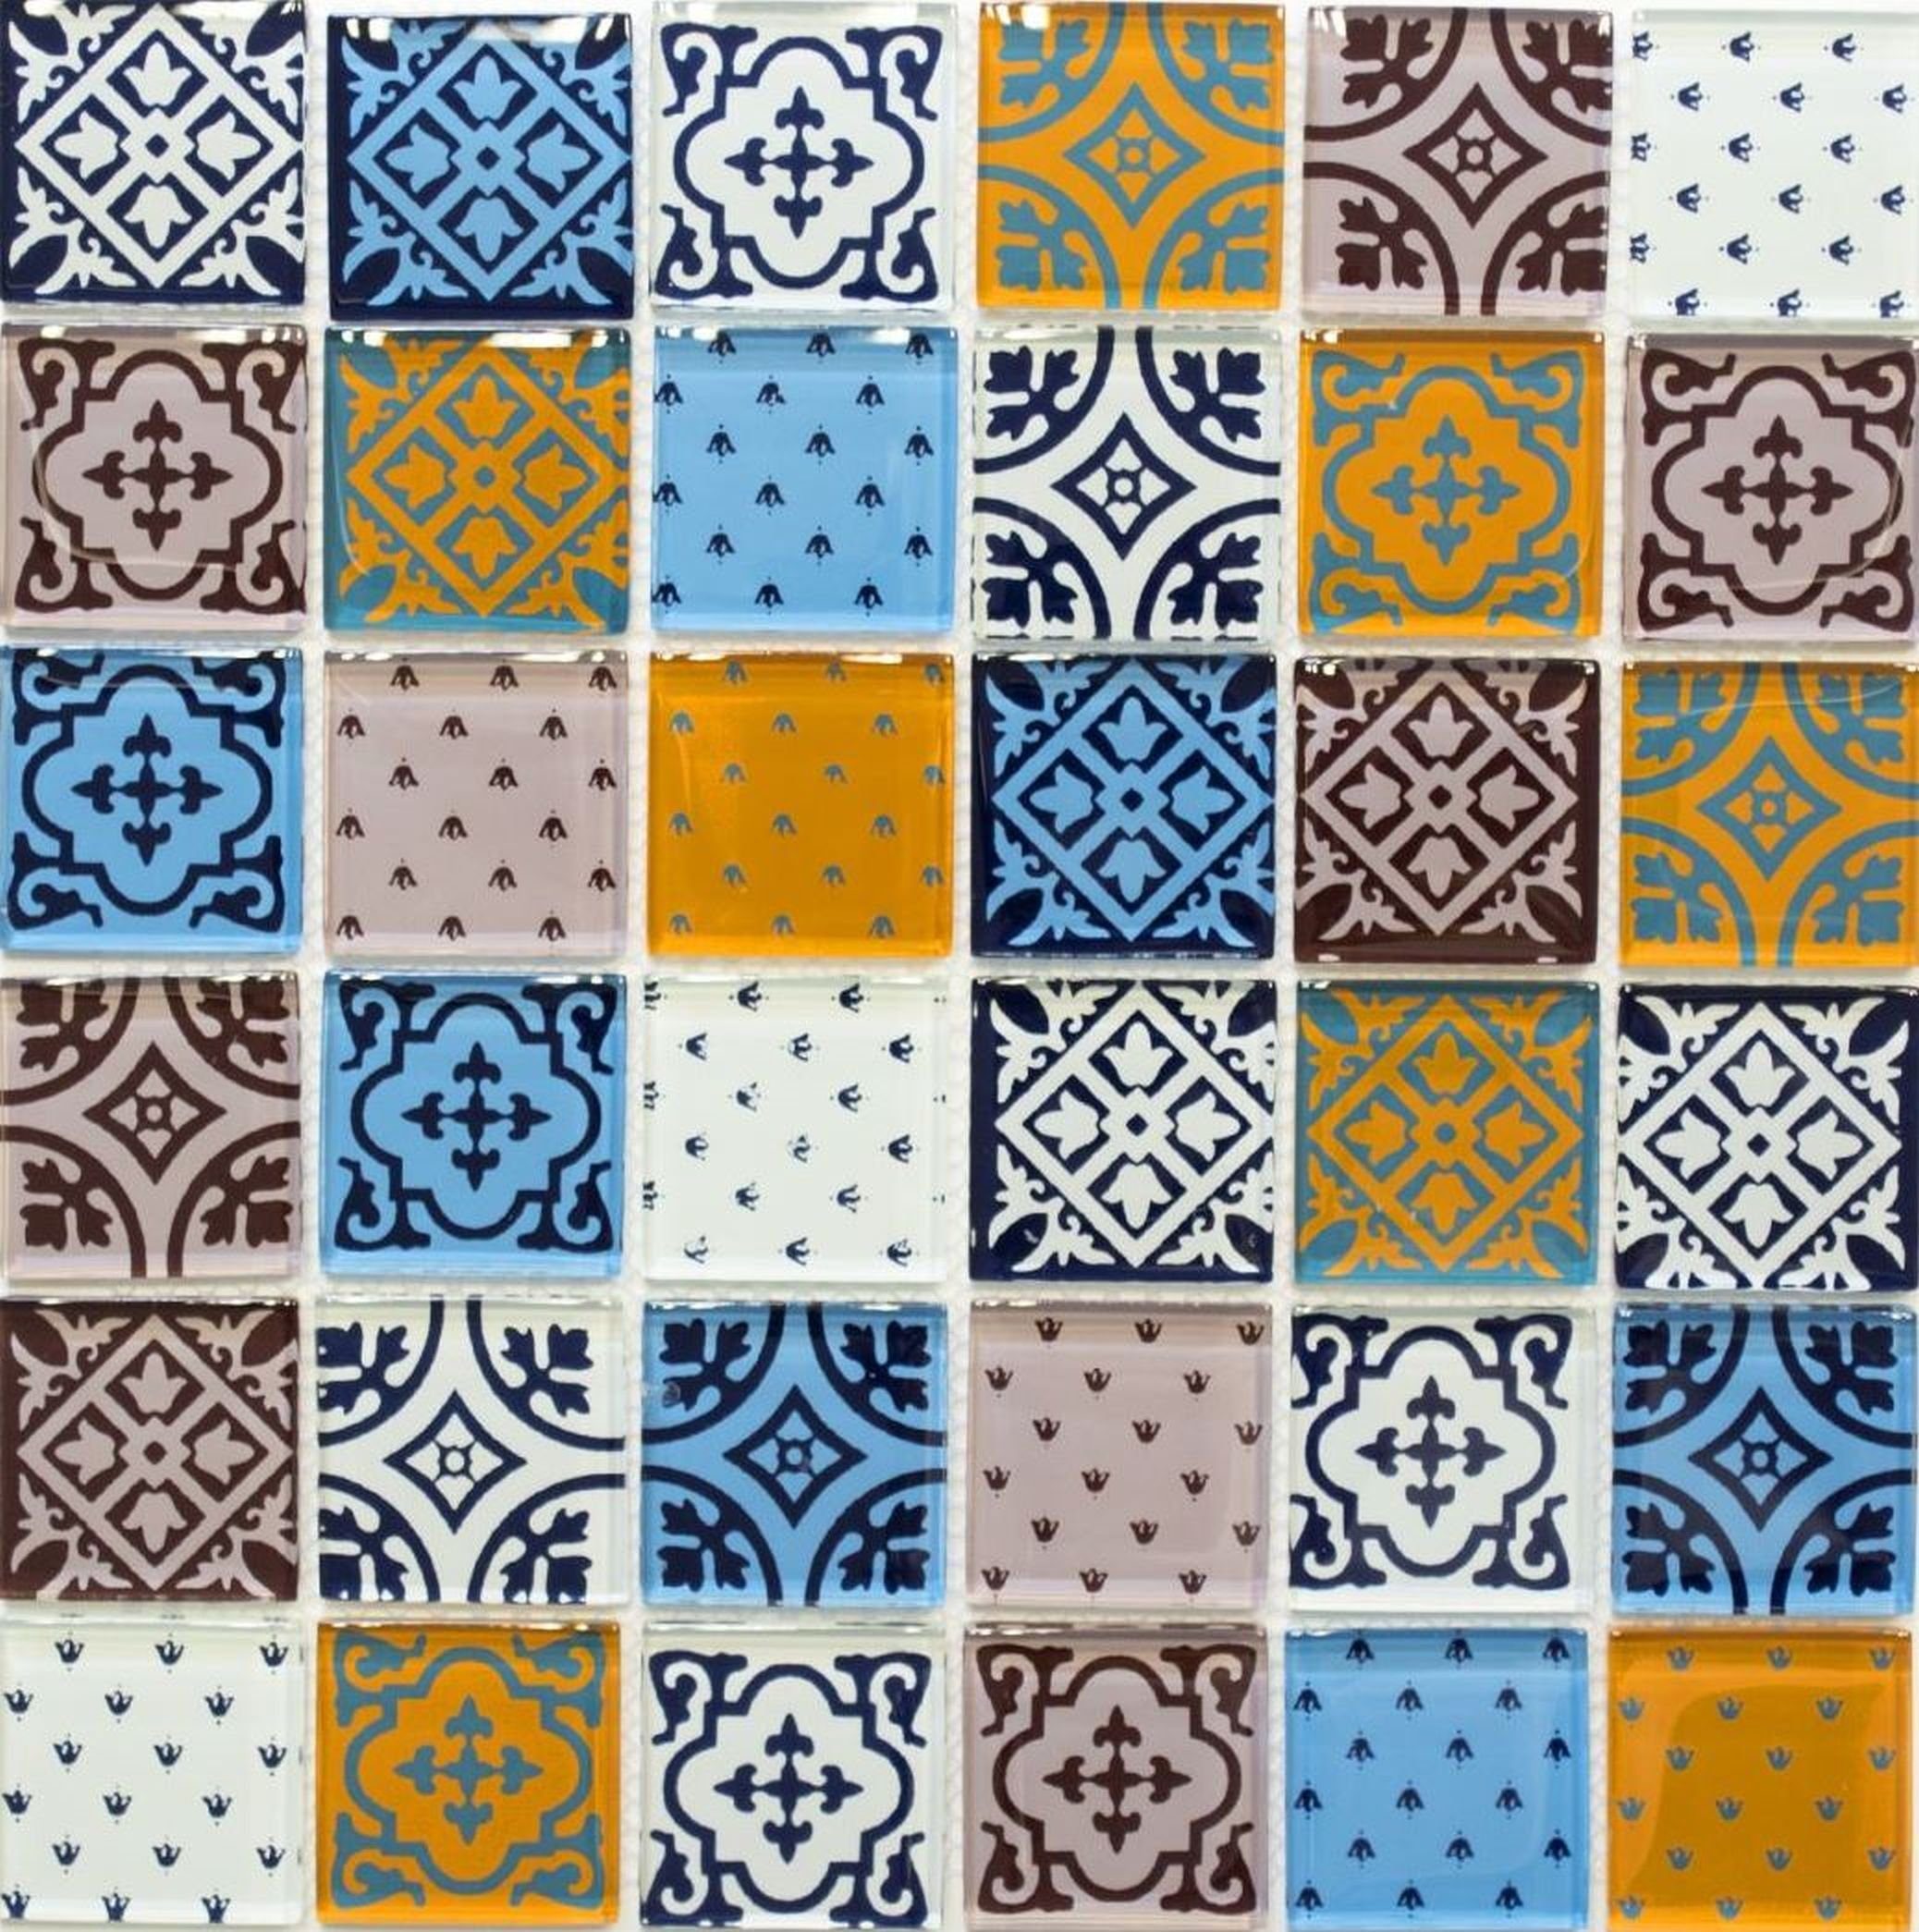 Mosani Mosaikfliesen Retro orange weiß Vintage blau Ornamente Glasmosaik Mosaikfliesen